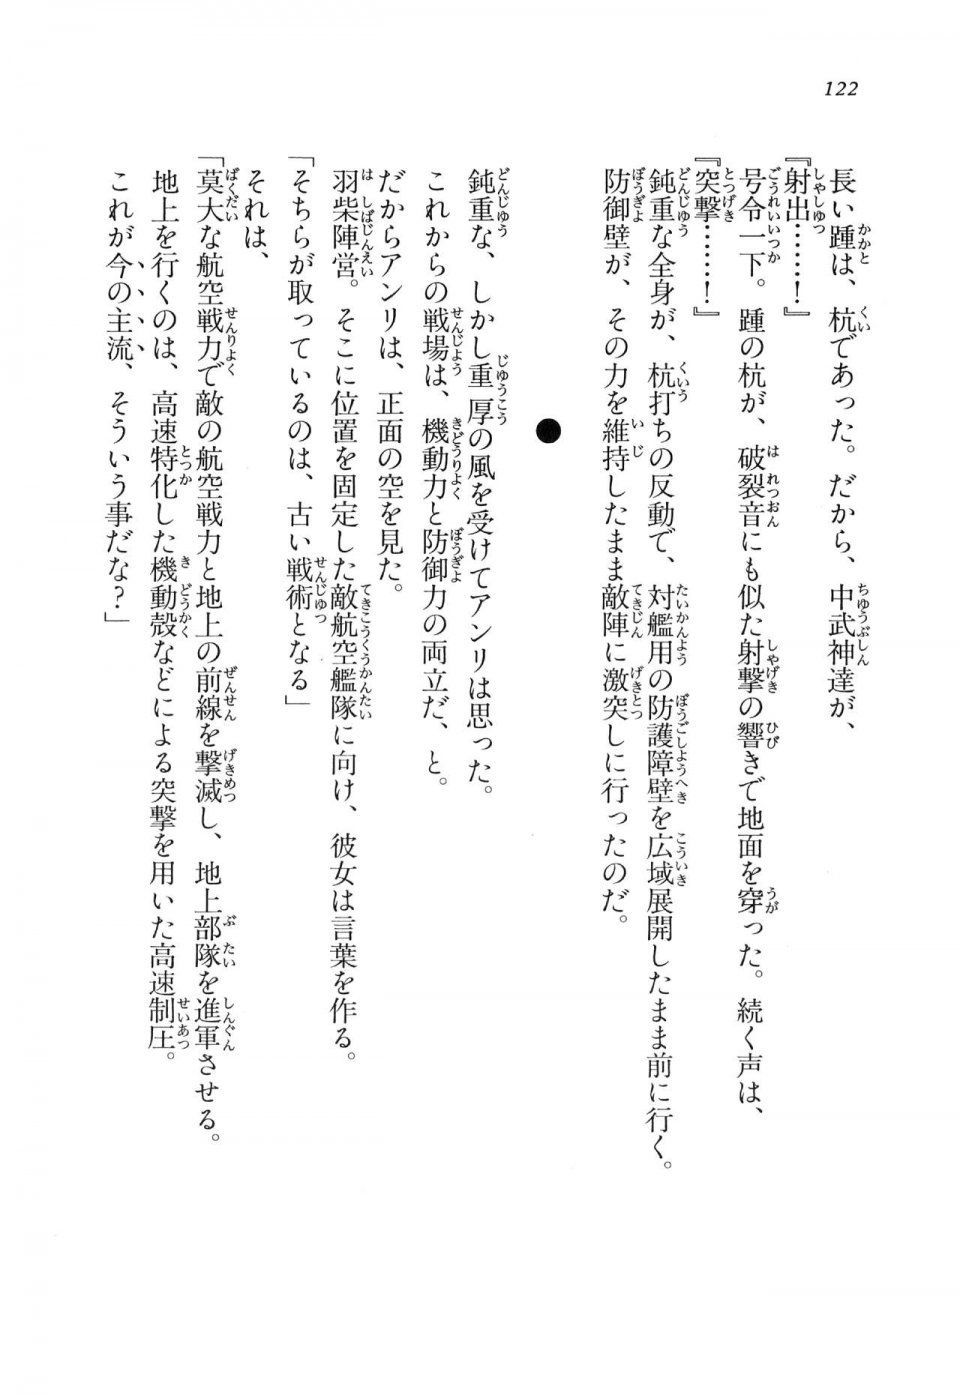 Kyoukai Senjou no Horizon LN Vol 11(5A) - Photo #122